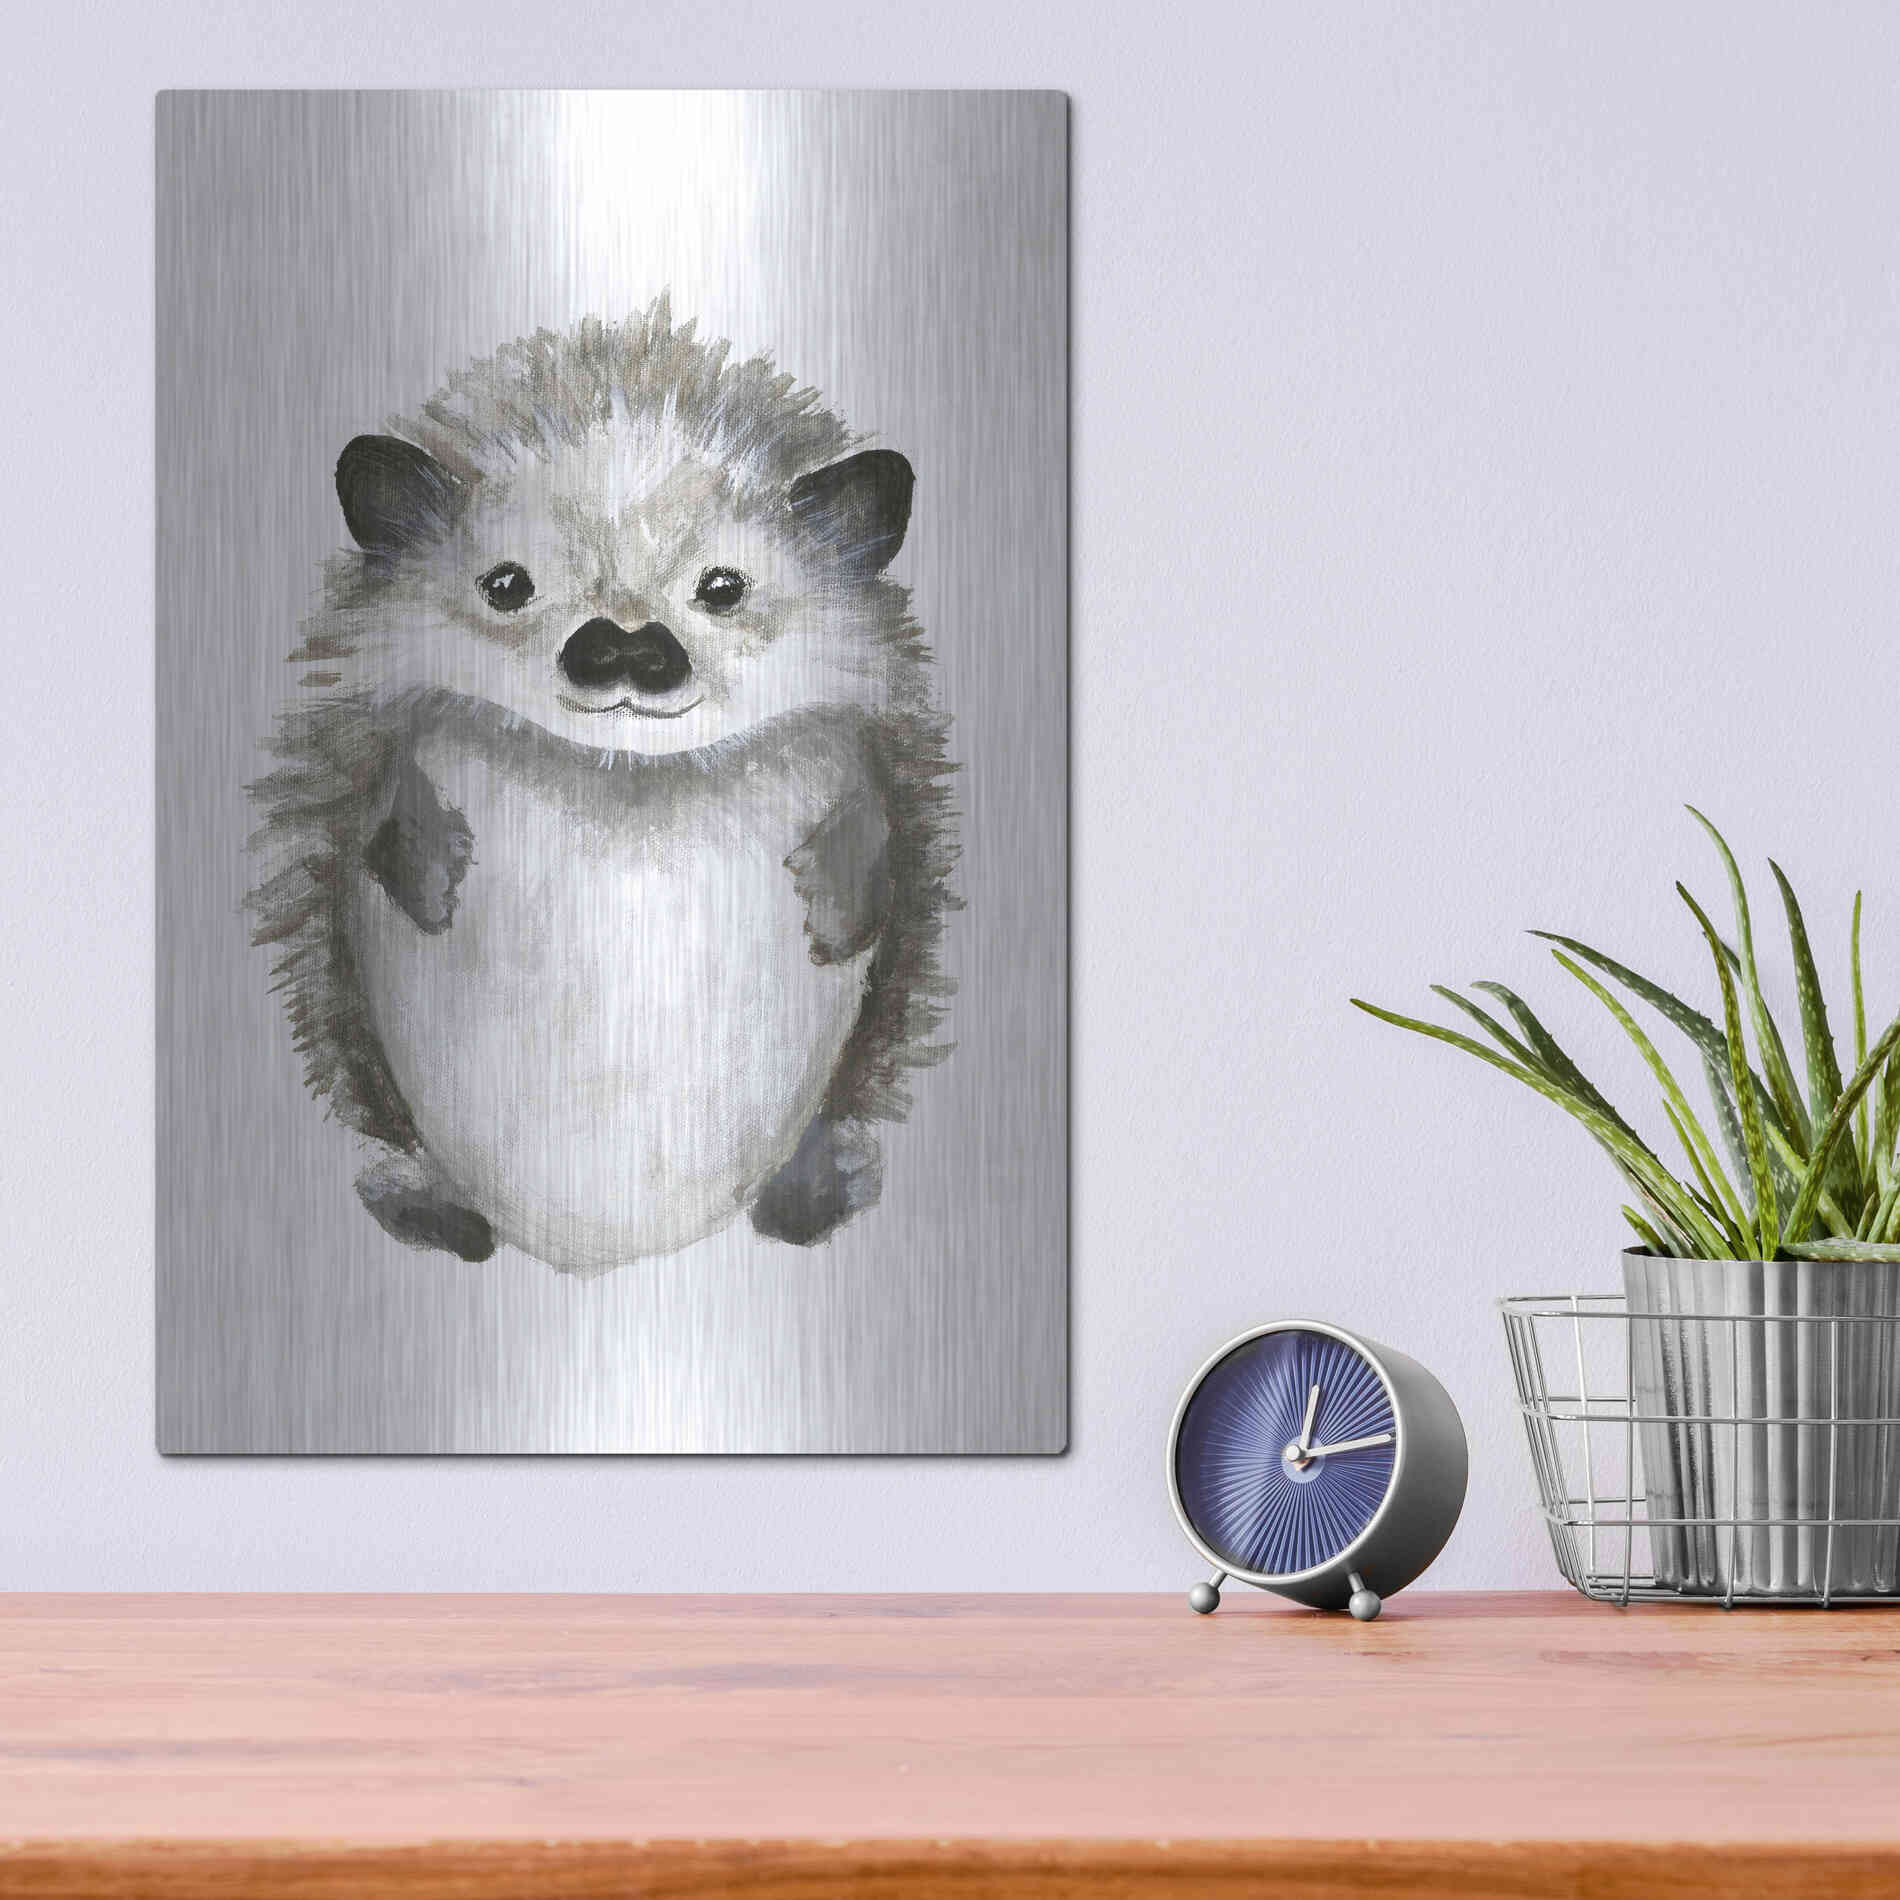 Luxe Metal Art 'Little Hedgehog' by Design Fabrikken, Metal Wall Art,12x16